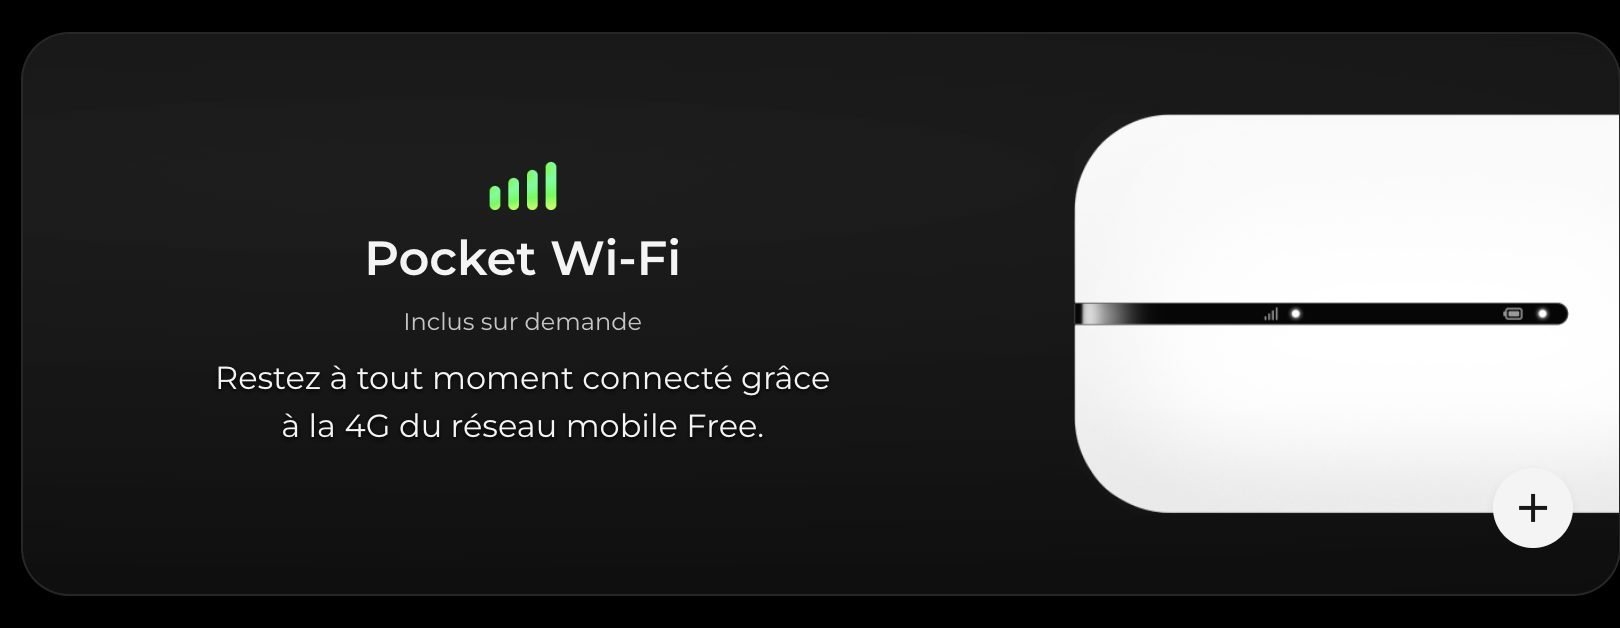 Pocket Wifi 4g Freebox Ultra